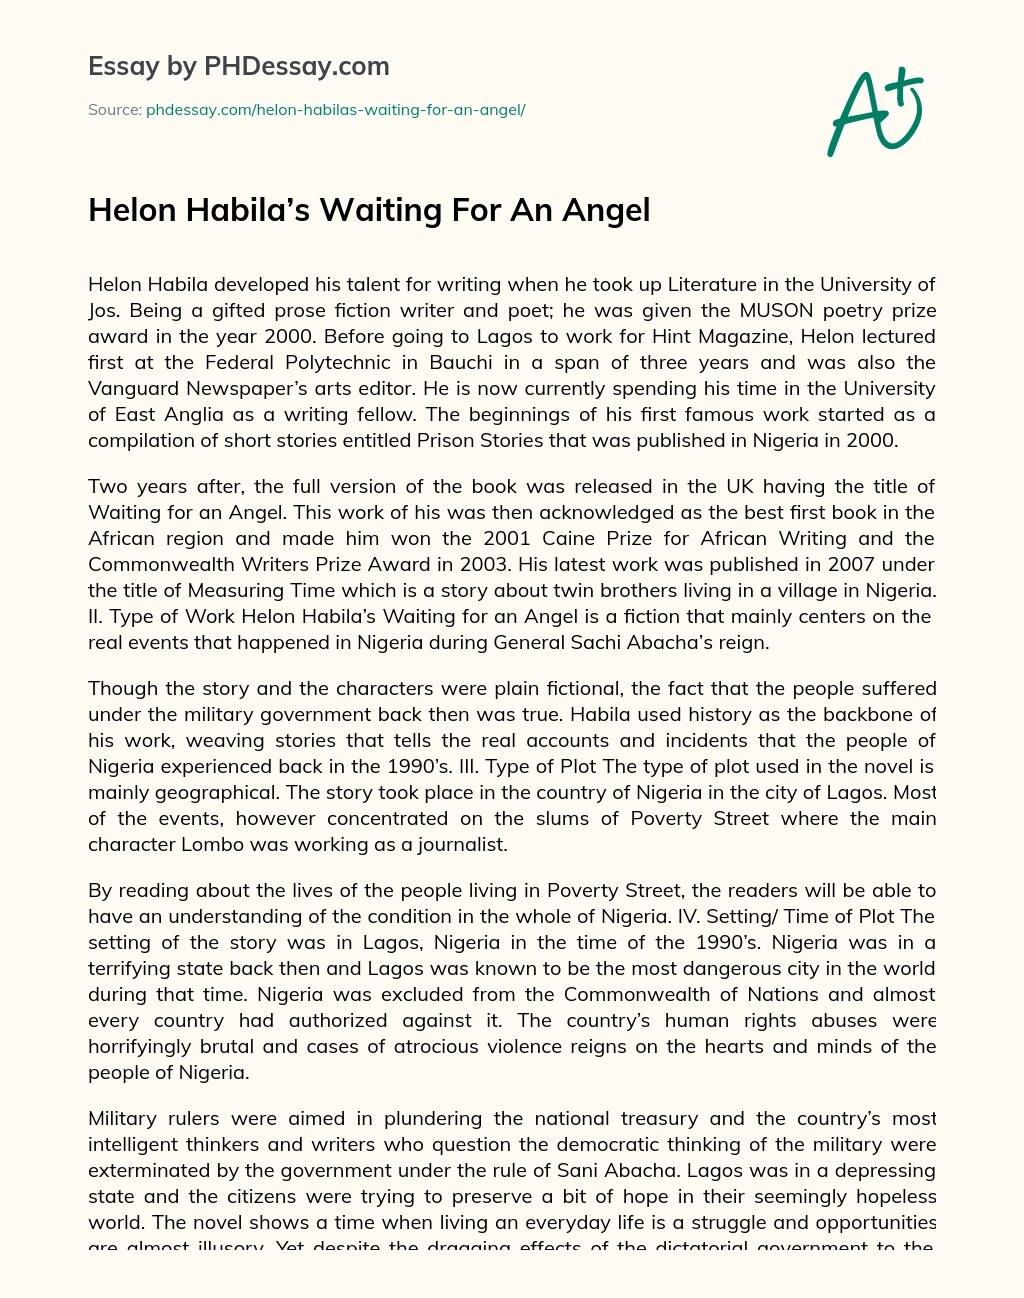 Helon Habila’s Waiting For An Angel essay